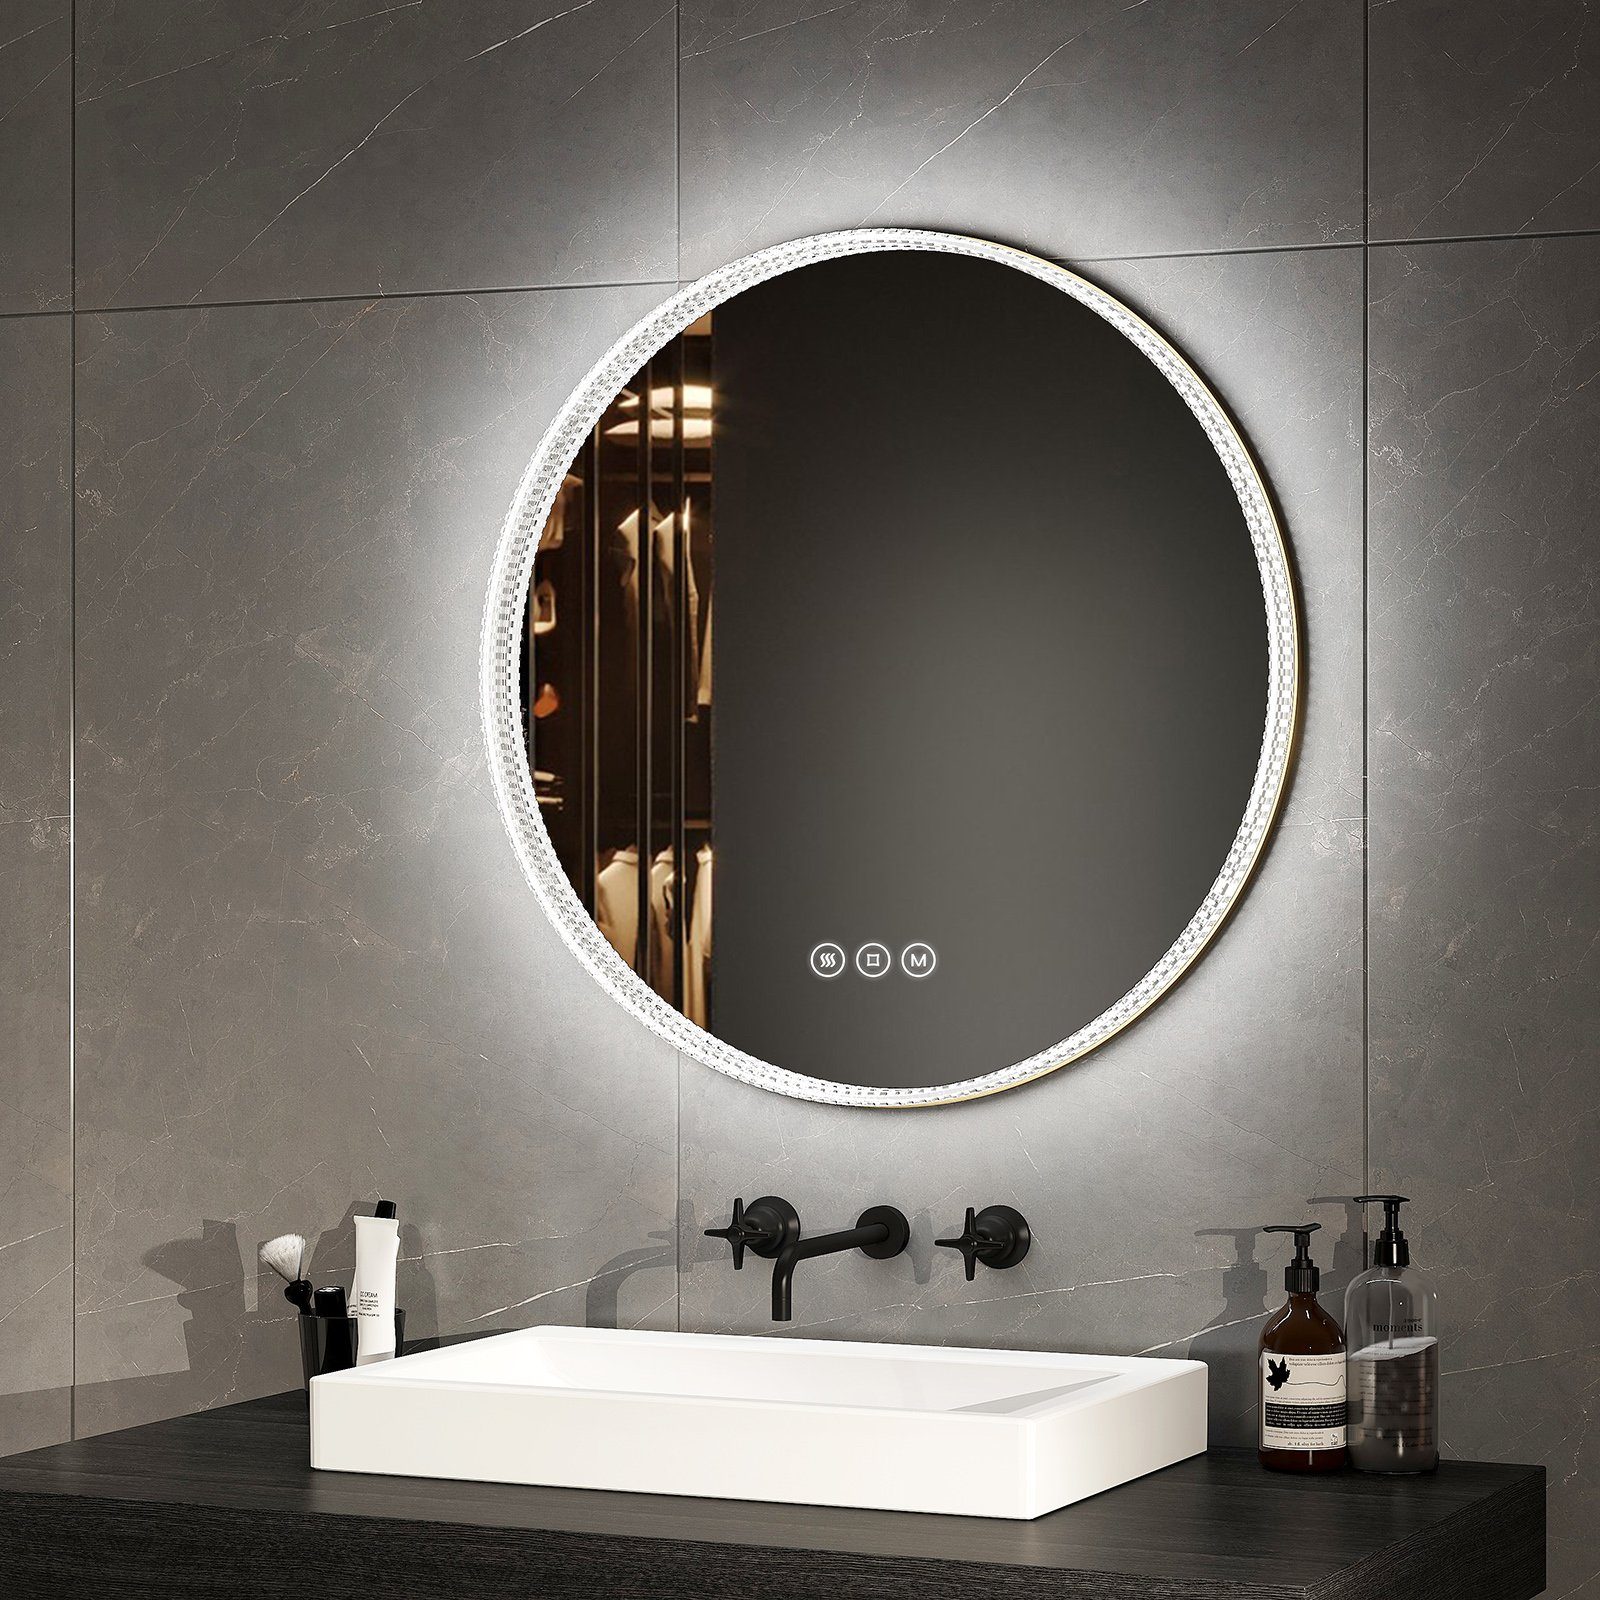 EMKE Badspiegel 60 cm LED Wandspiegel Spiegel, Acryl 3 Memory-Funktion Lichtfarben Rand Rahmen Badezimmerspiegel Touch, mit Goldener Antibeschlage,Dimmbar